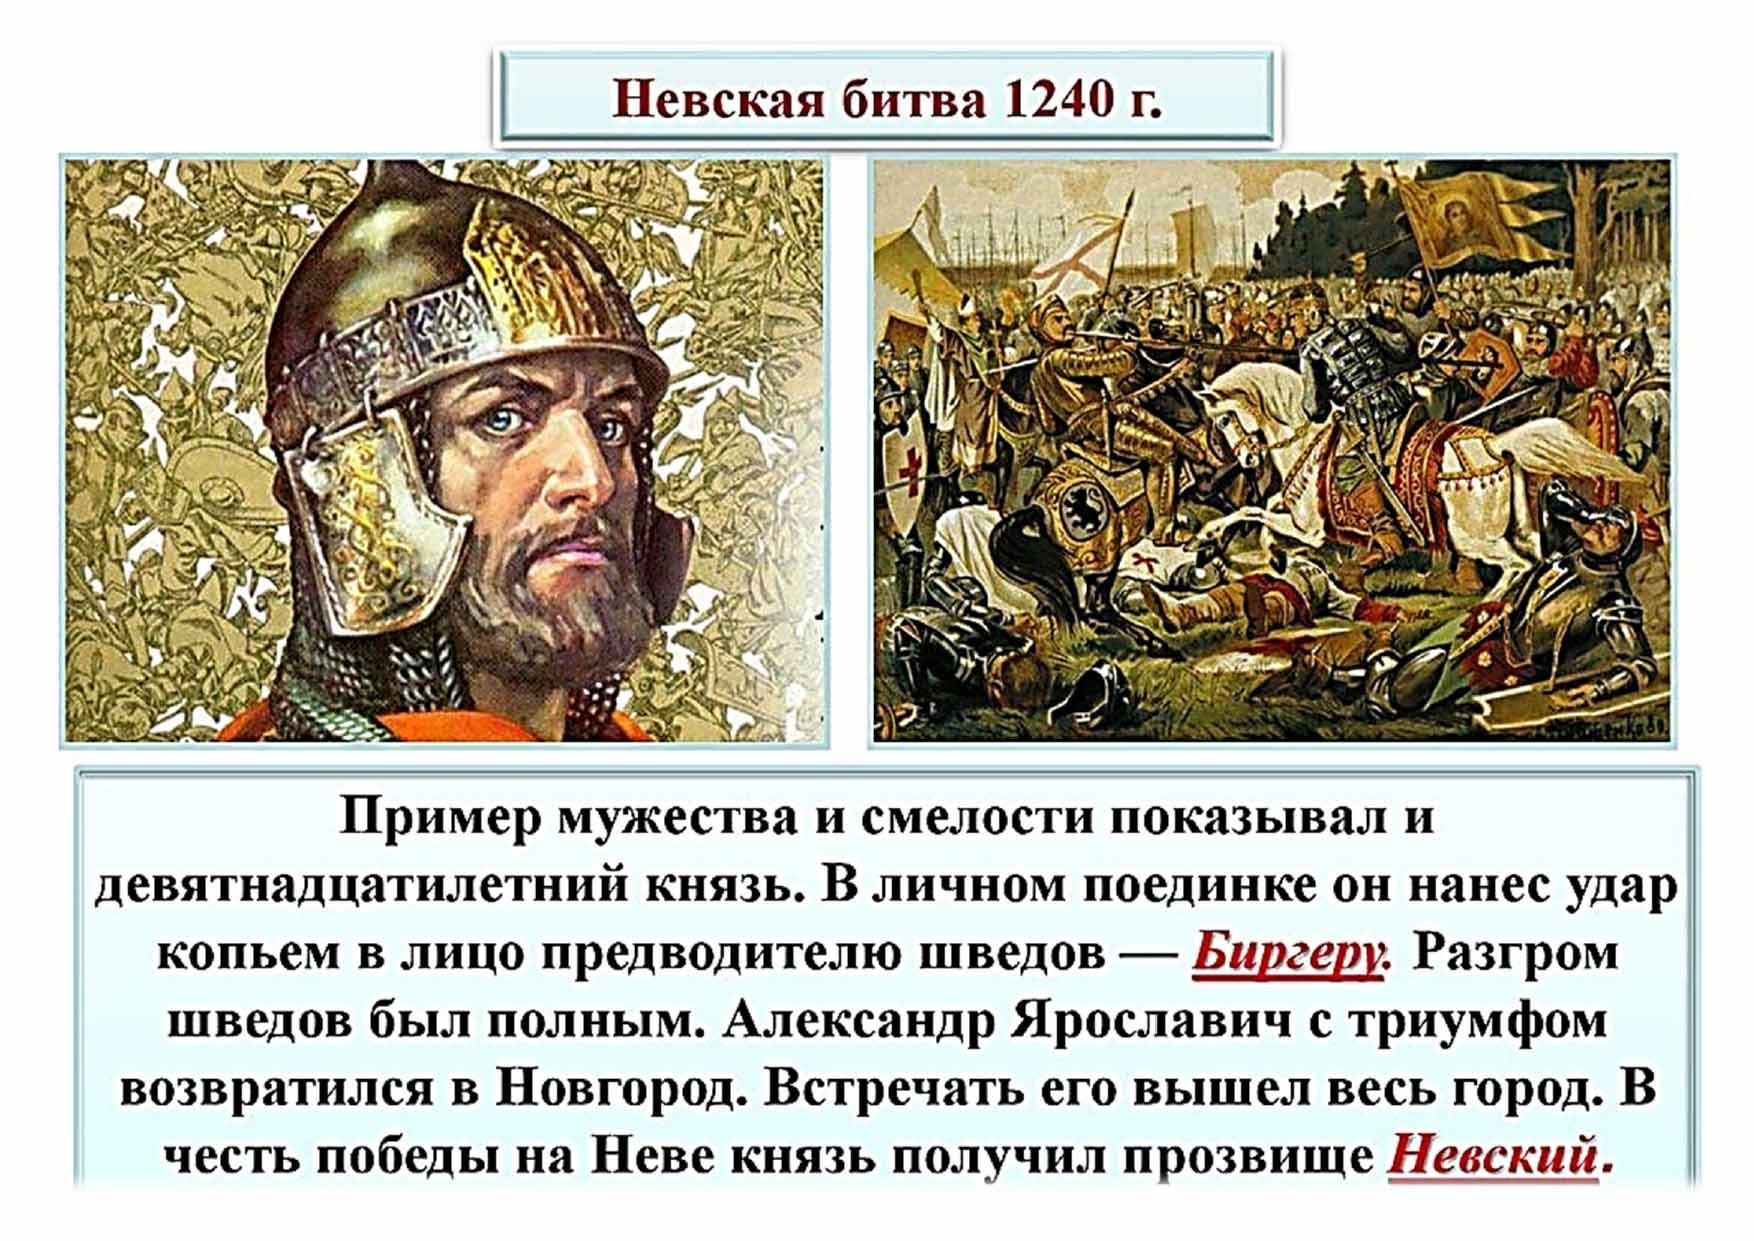 Правитель швеции участник невской битвы. 15 Июля 1240 Невская битва.